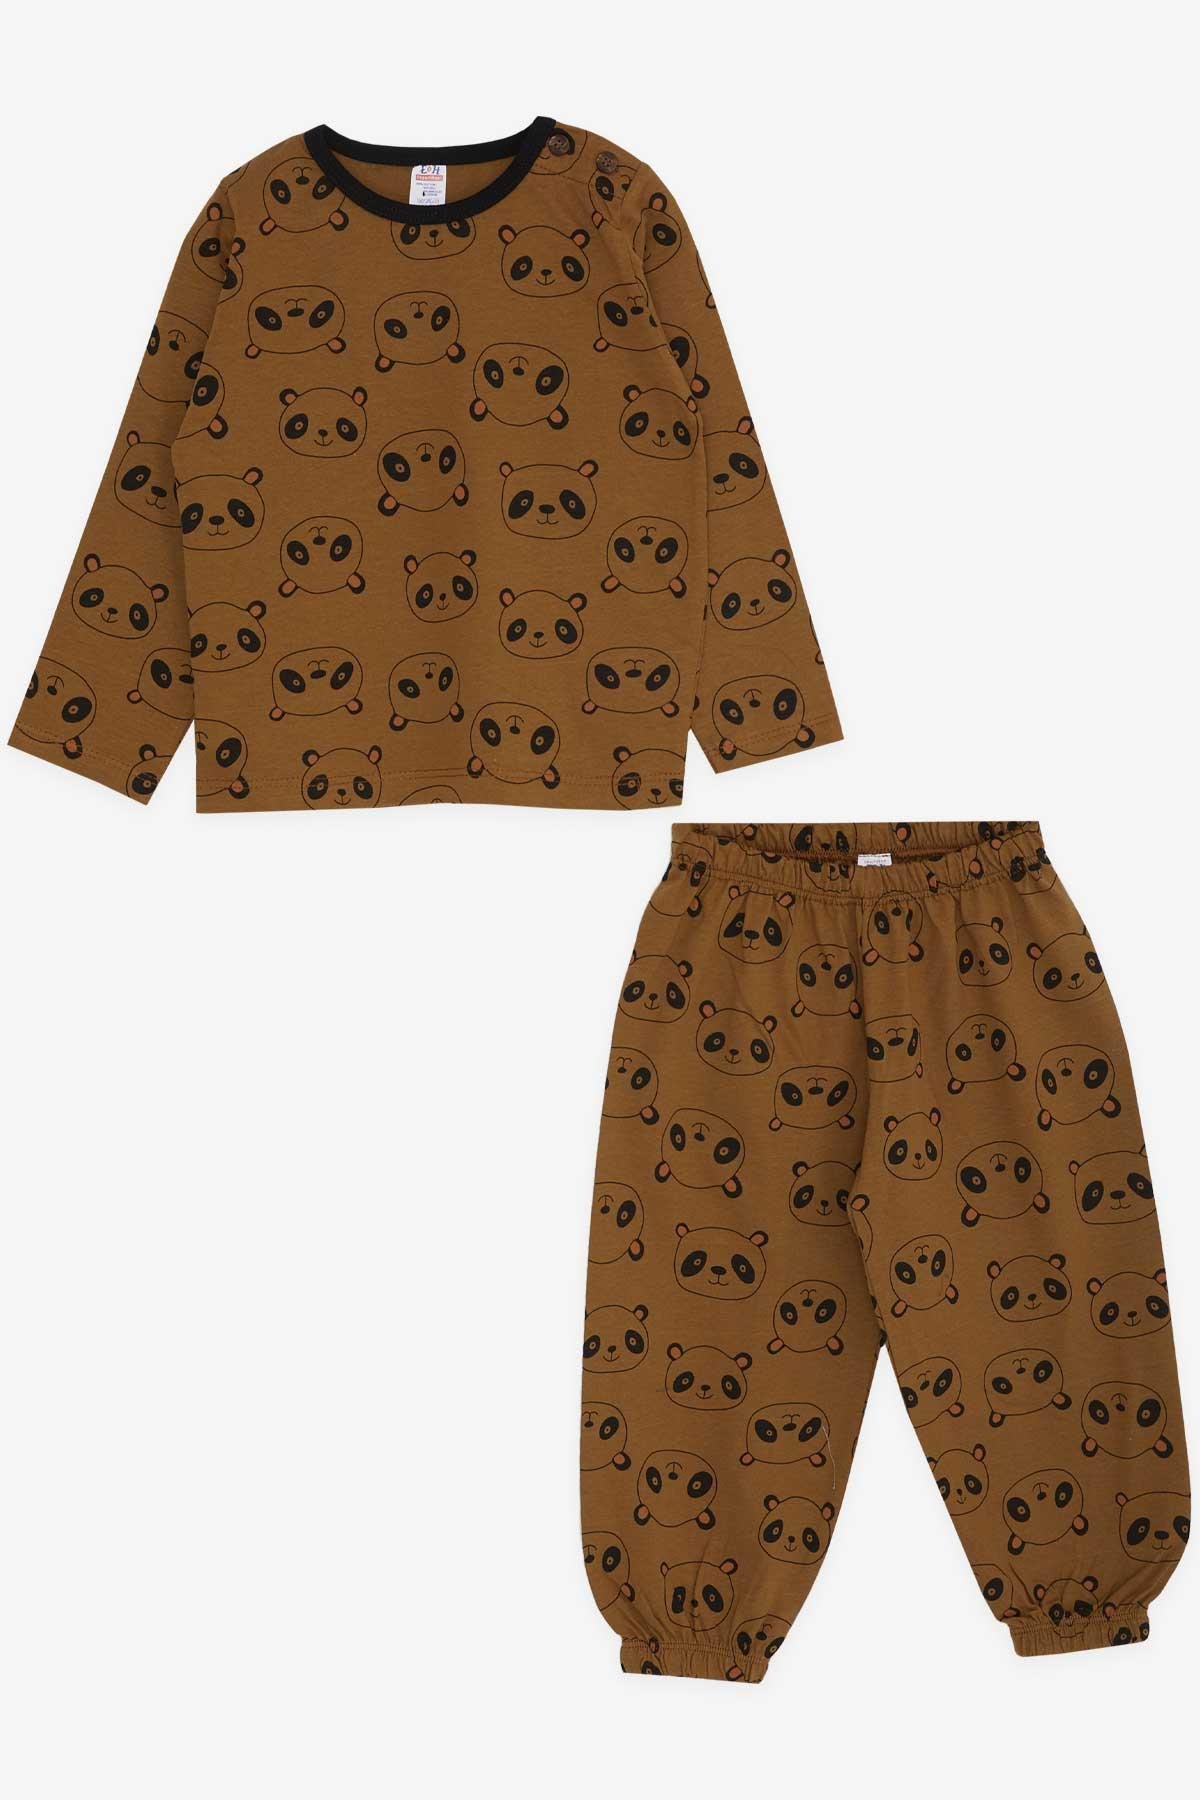 Erkek Bebek Pijama Takımı Panda Desenli Açık Kahverengi 9 Ay-2 Yaş -  Yumuşak Kumaşlı Çocuk Pijamaları | Breeze